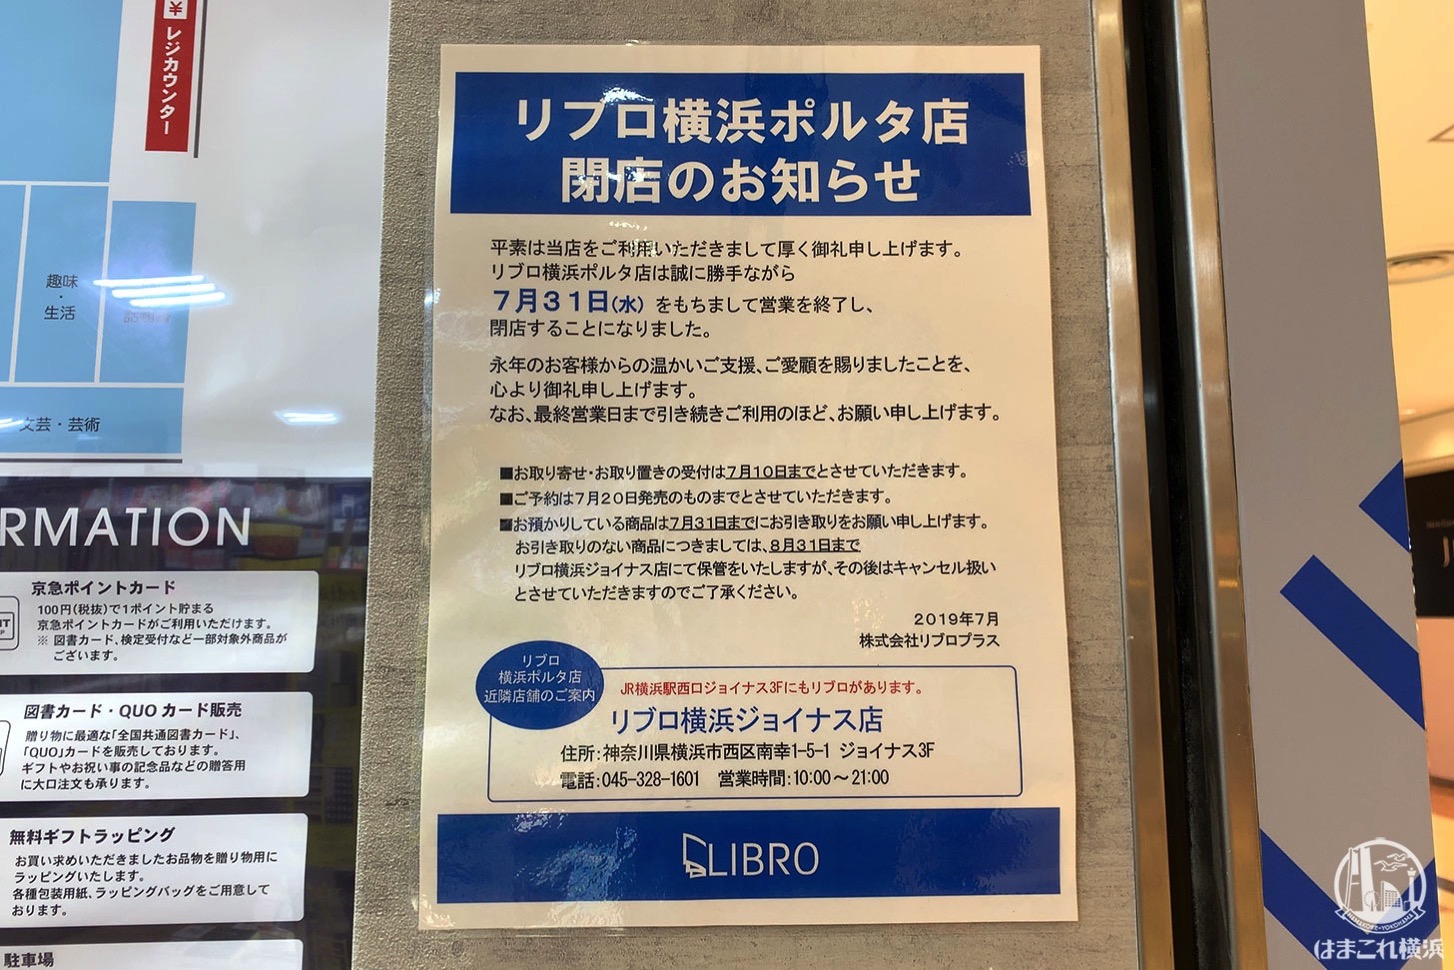 横浜ポルタの本屋「リブロ」が2019年7月31日をもって閉店